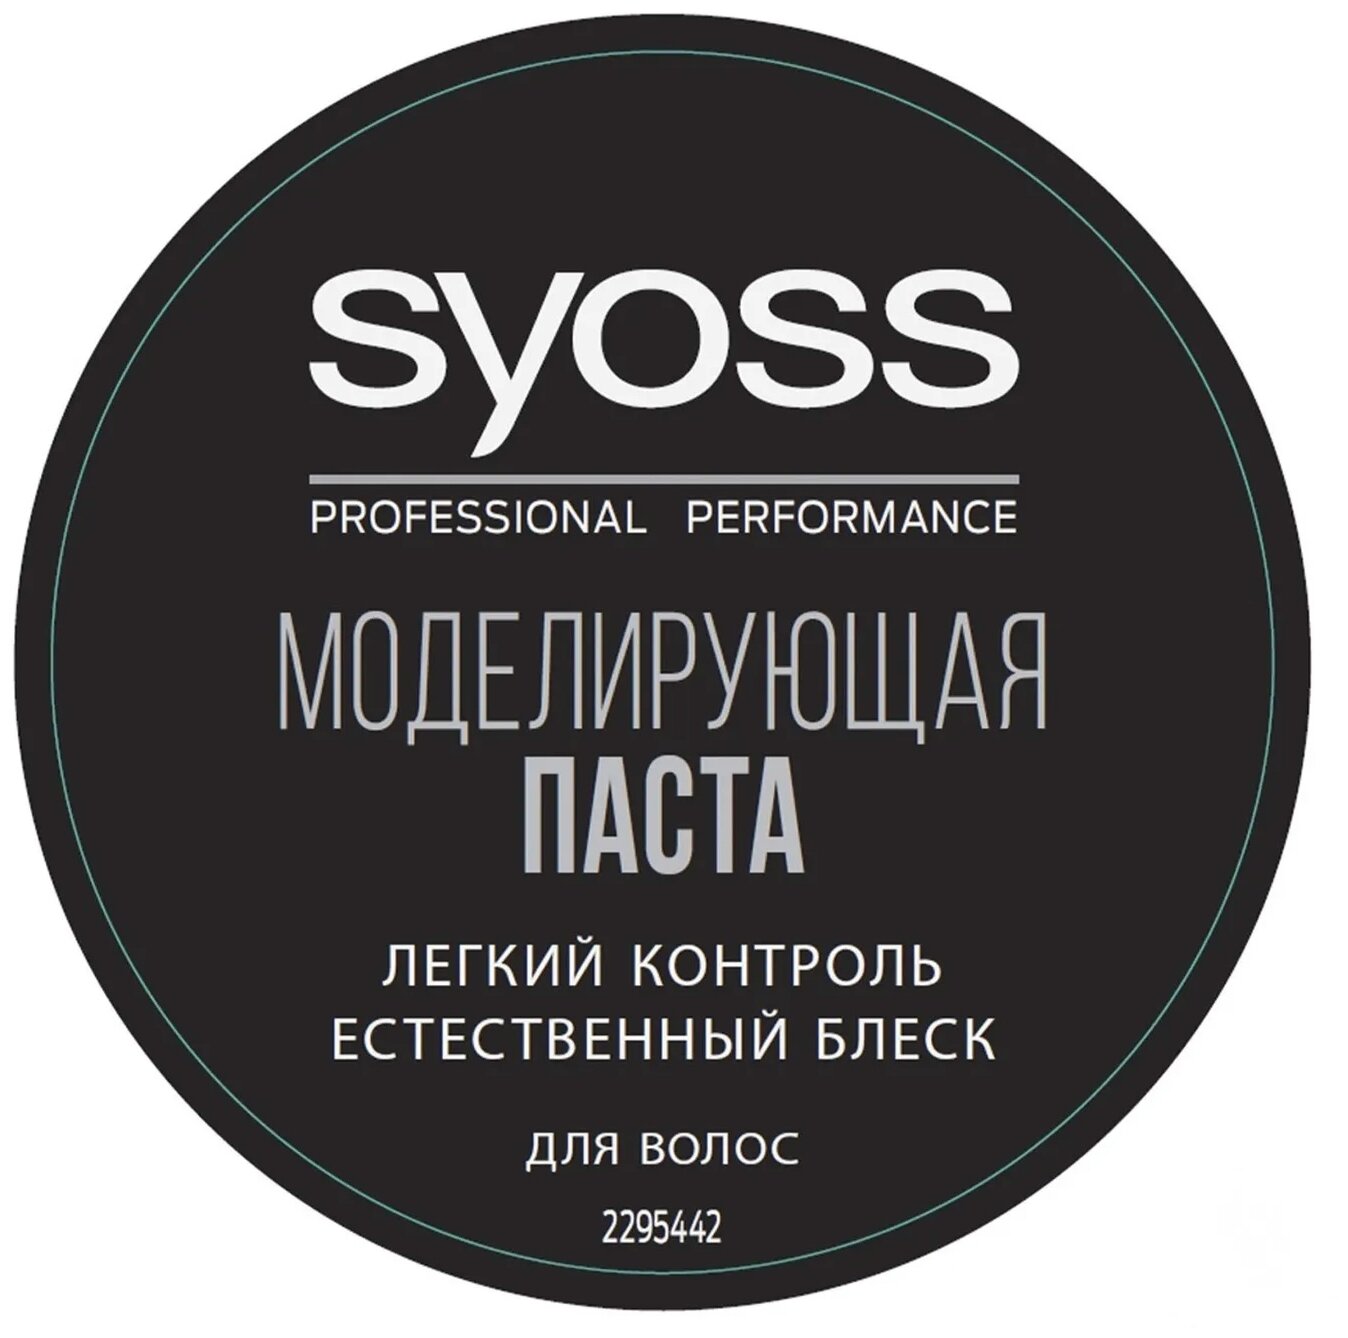 Syoss Professional Performance Моделирующая паста Легкий контроль